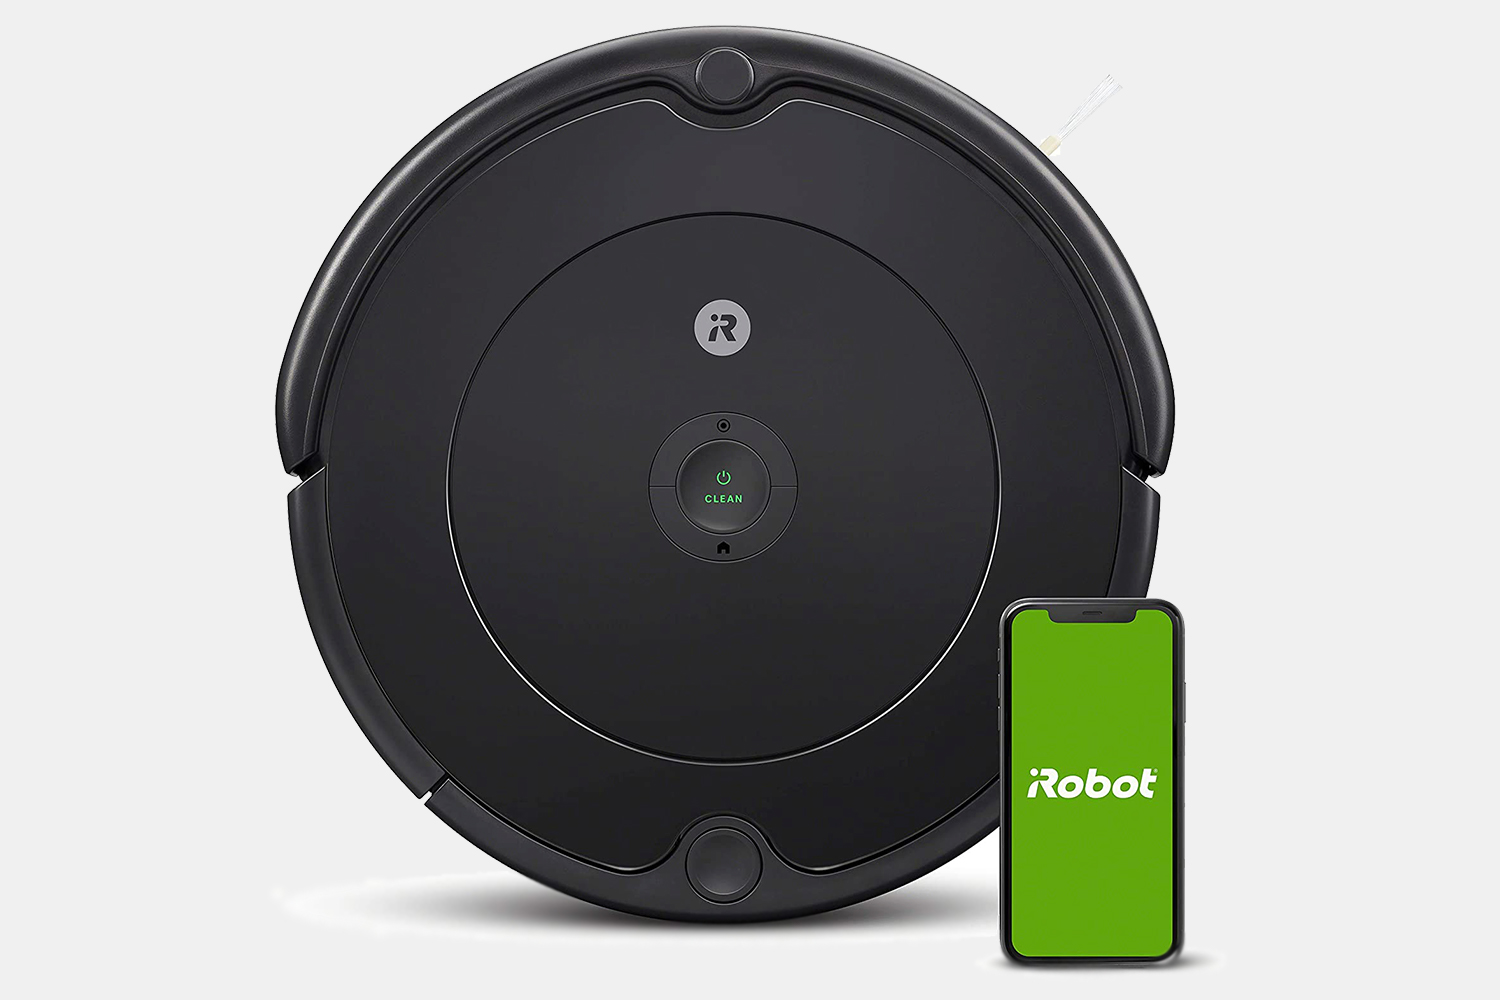 iRobot Roomba robot vacuum